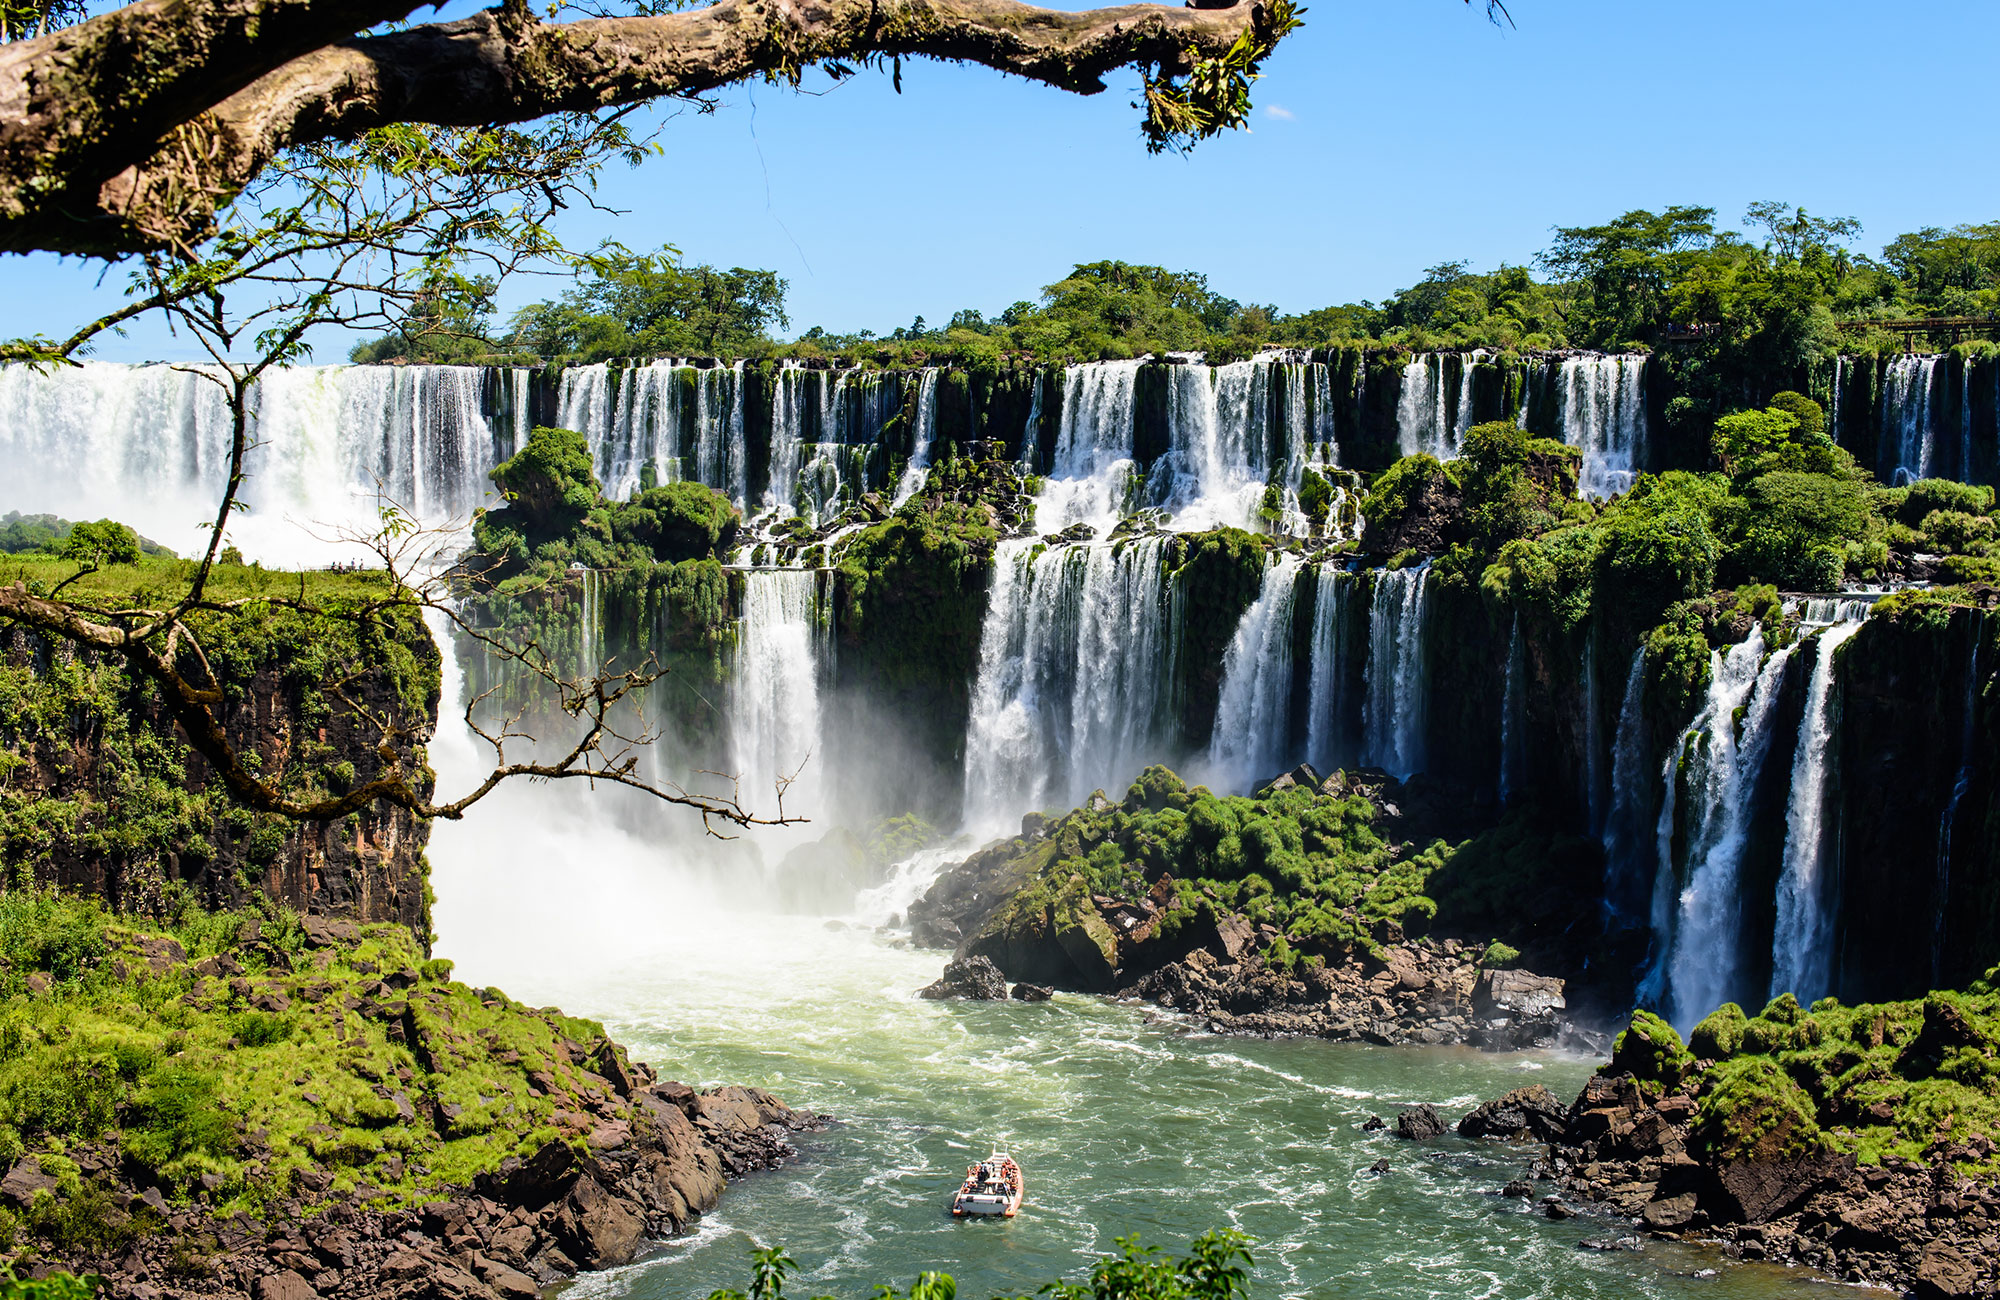 Etelä-Amerikan parhaat kohteet - Iguassun putoukset - KILROY